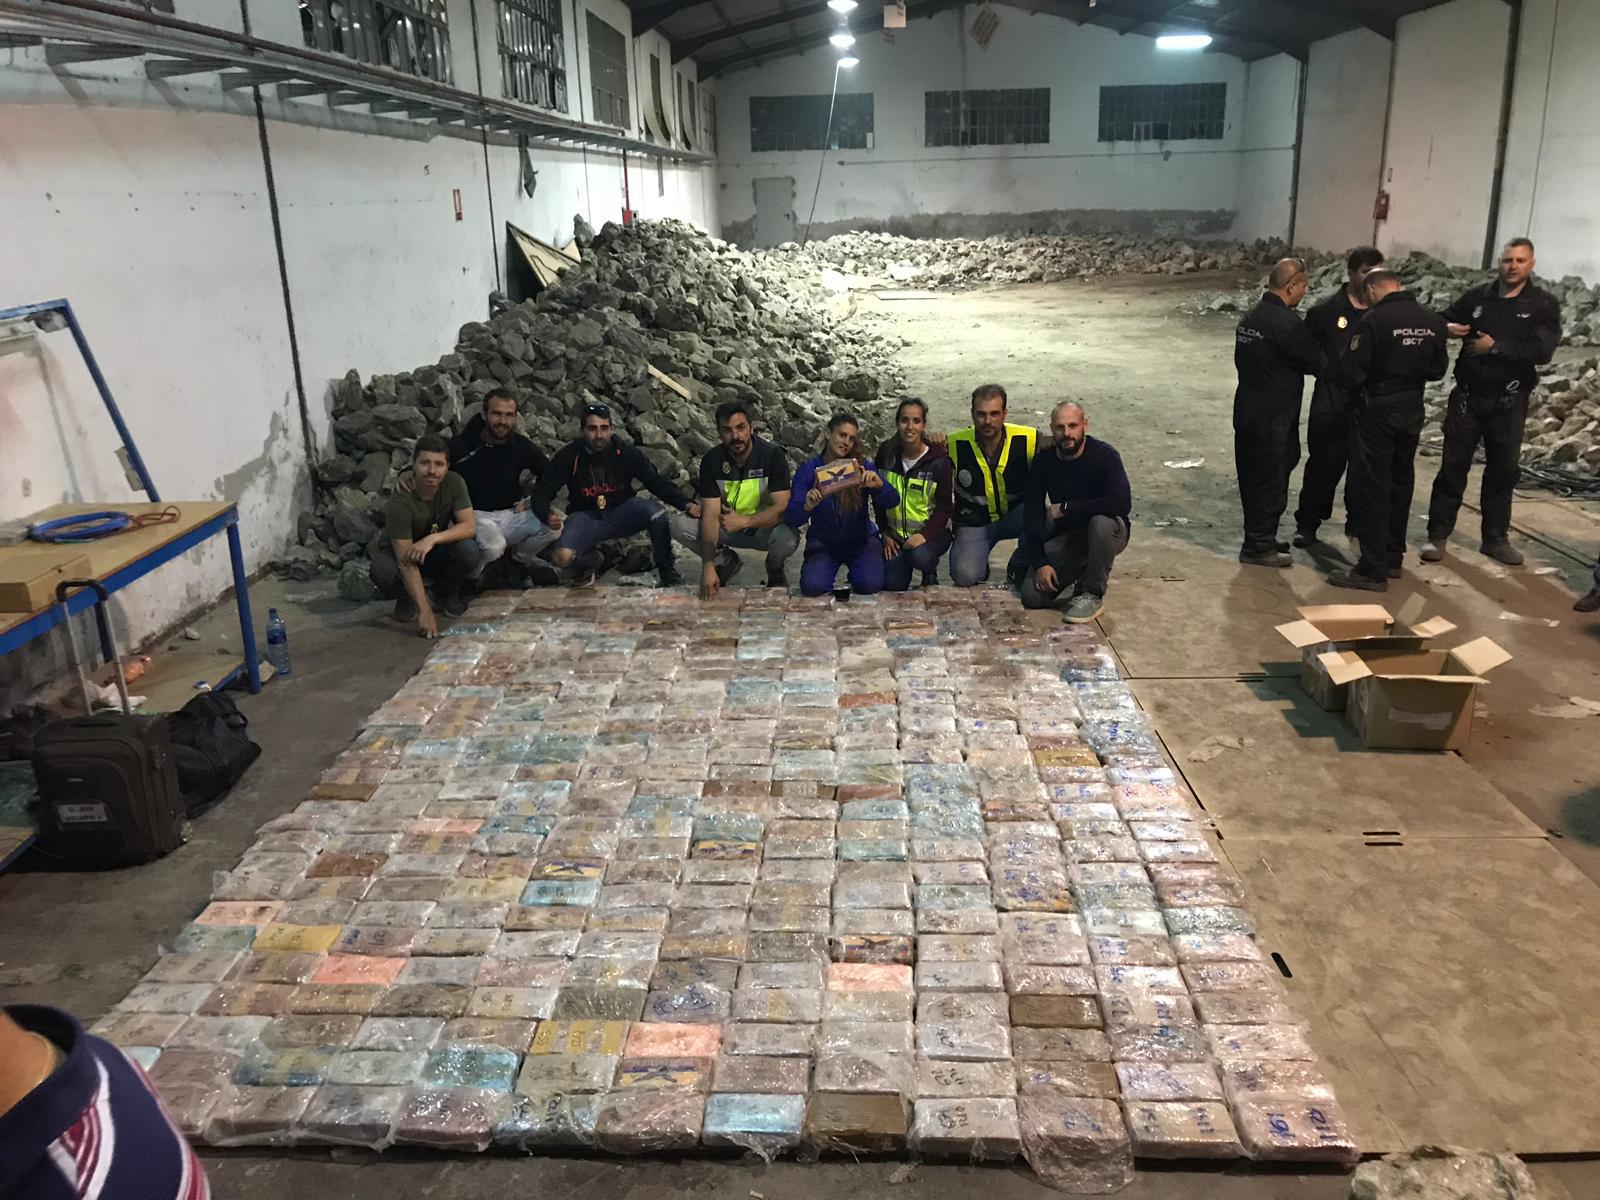  Polícia encontra cerca de 1 tonelada de cocaína escondida em pedras na Espanha